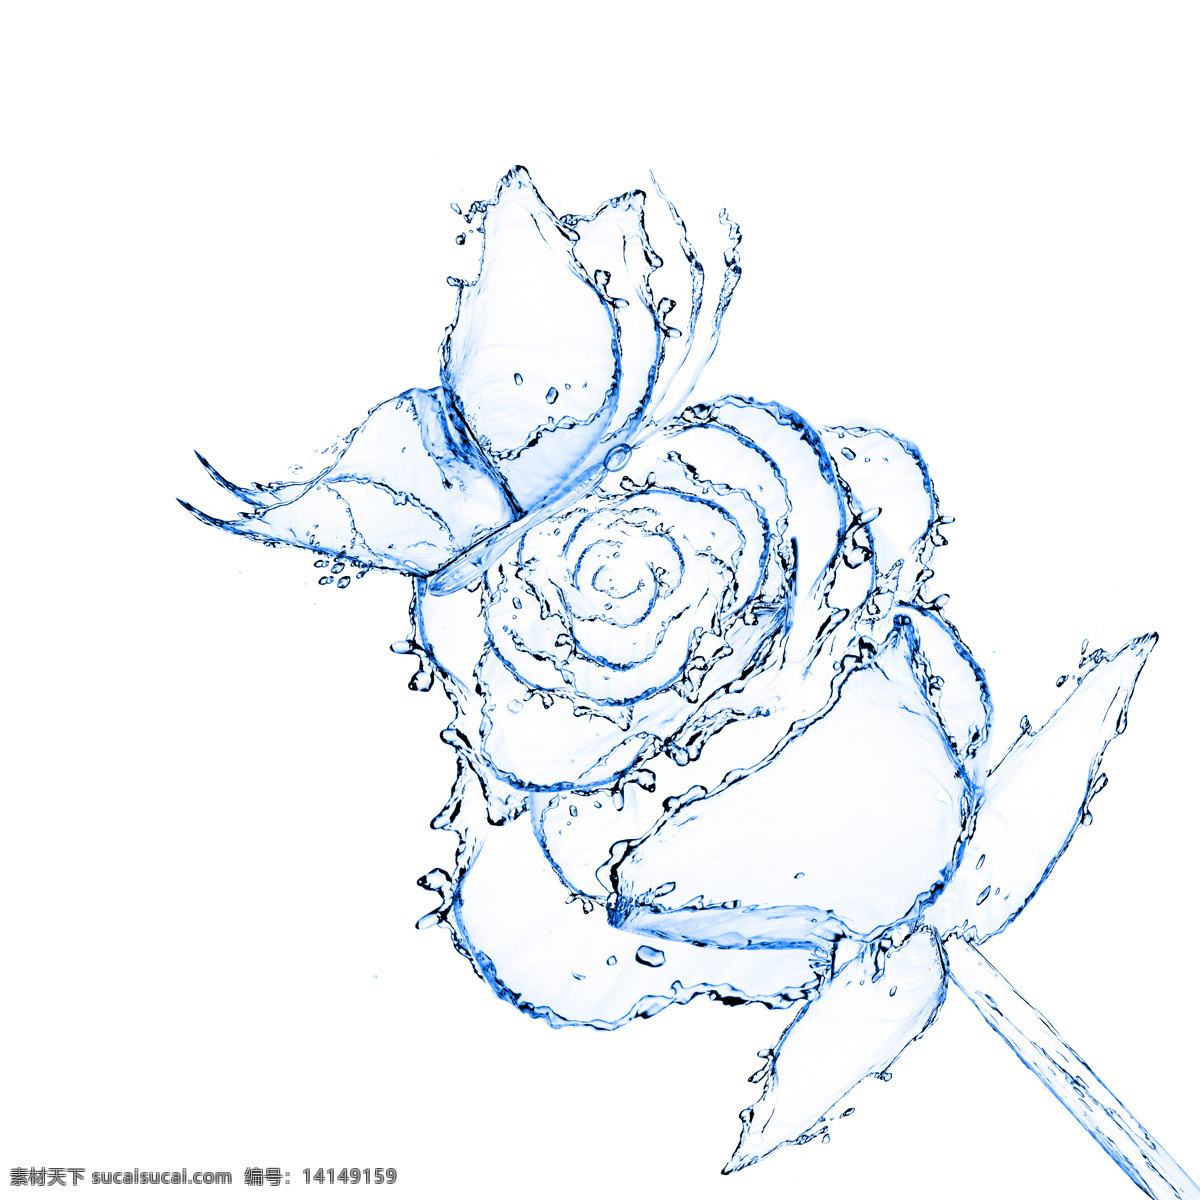 创意 大图 蝶恋花 高清 蝴蝶 蓝色 玫瑰 液态水 组成 花朵 图案 创意设计 模板下载 水滴 水珠 水花 液体 透明 图形 液态 psd源文件